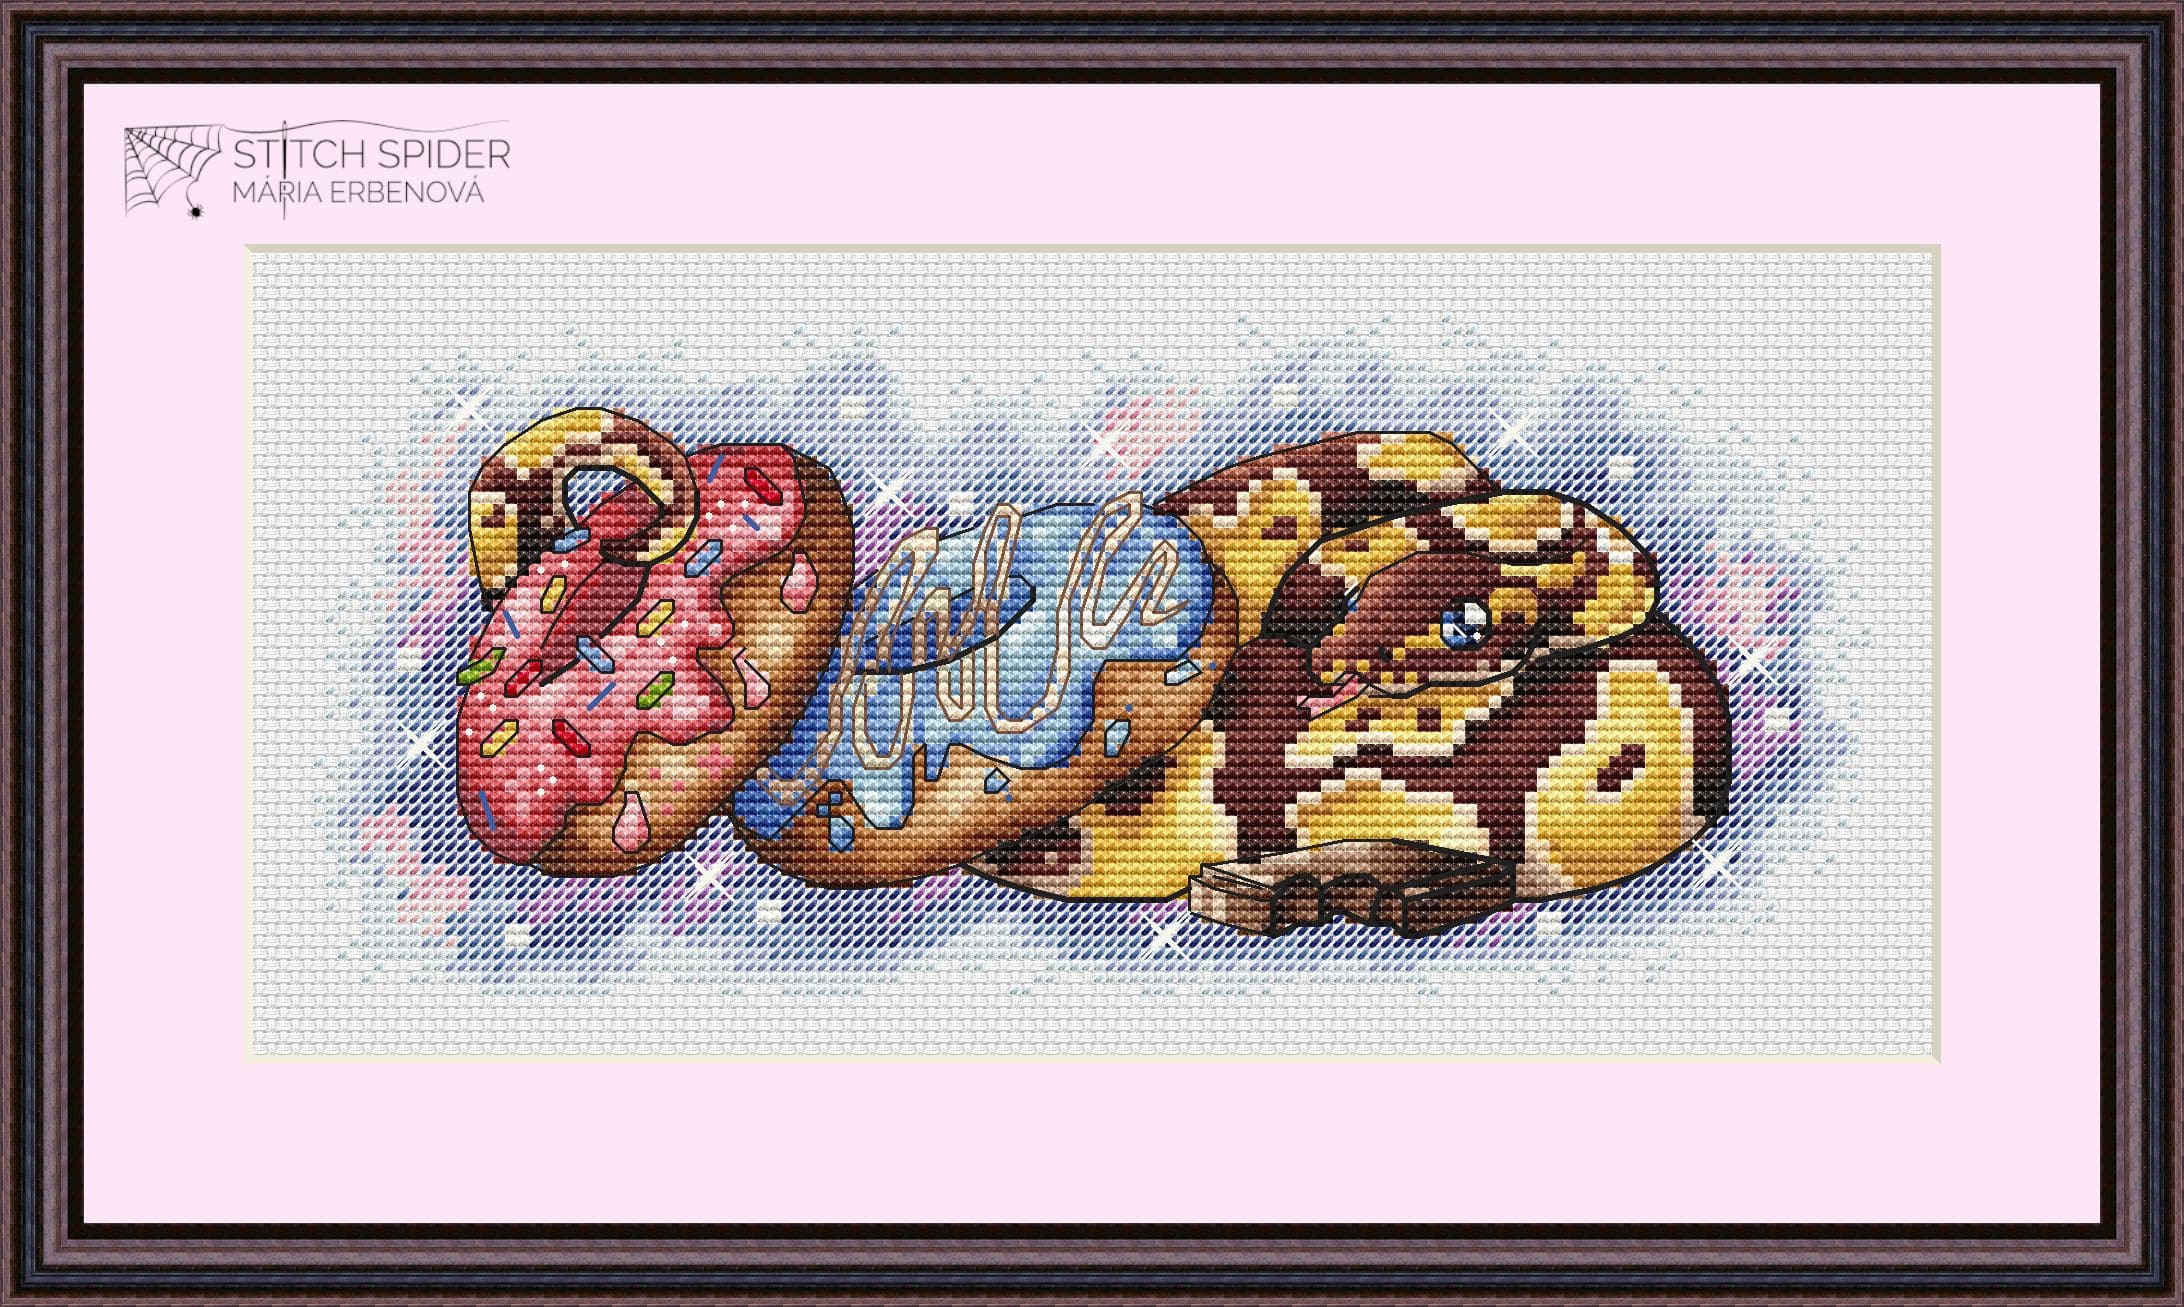 Snake with donuts - predloha na vyšívanie